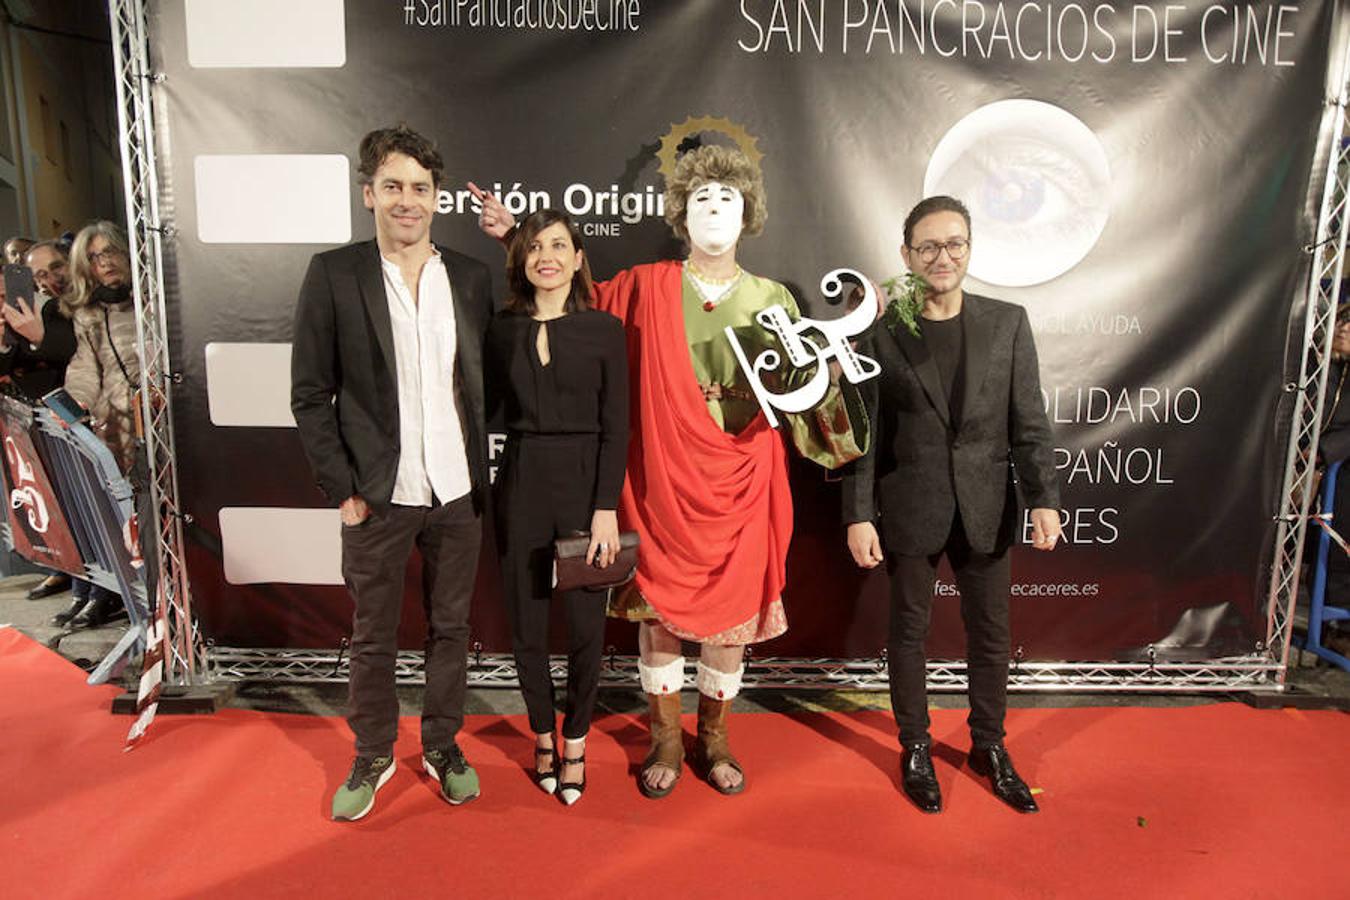 «Potencia el cine español y es solidario. Tendría que haber más festivales como este en España», afirmó el director